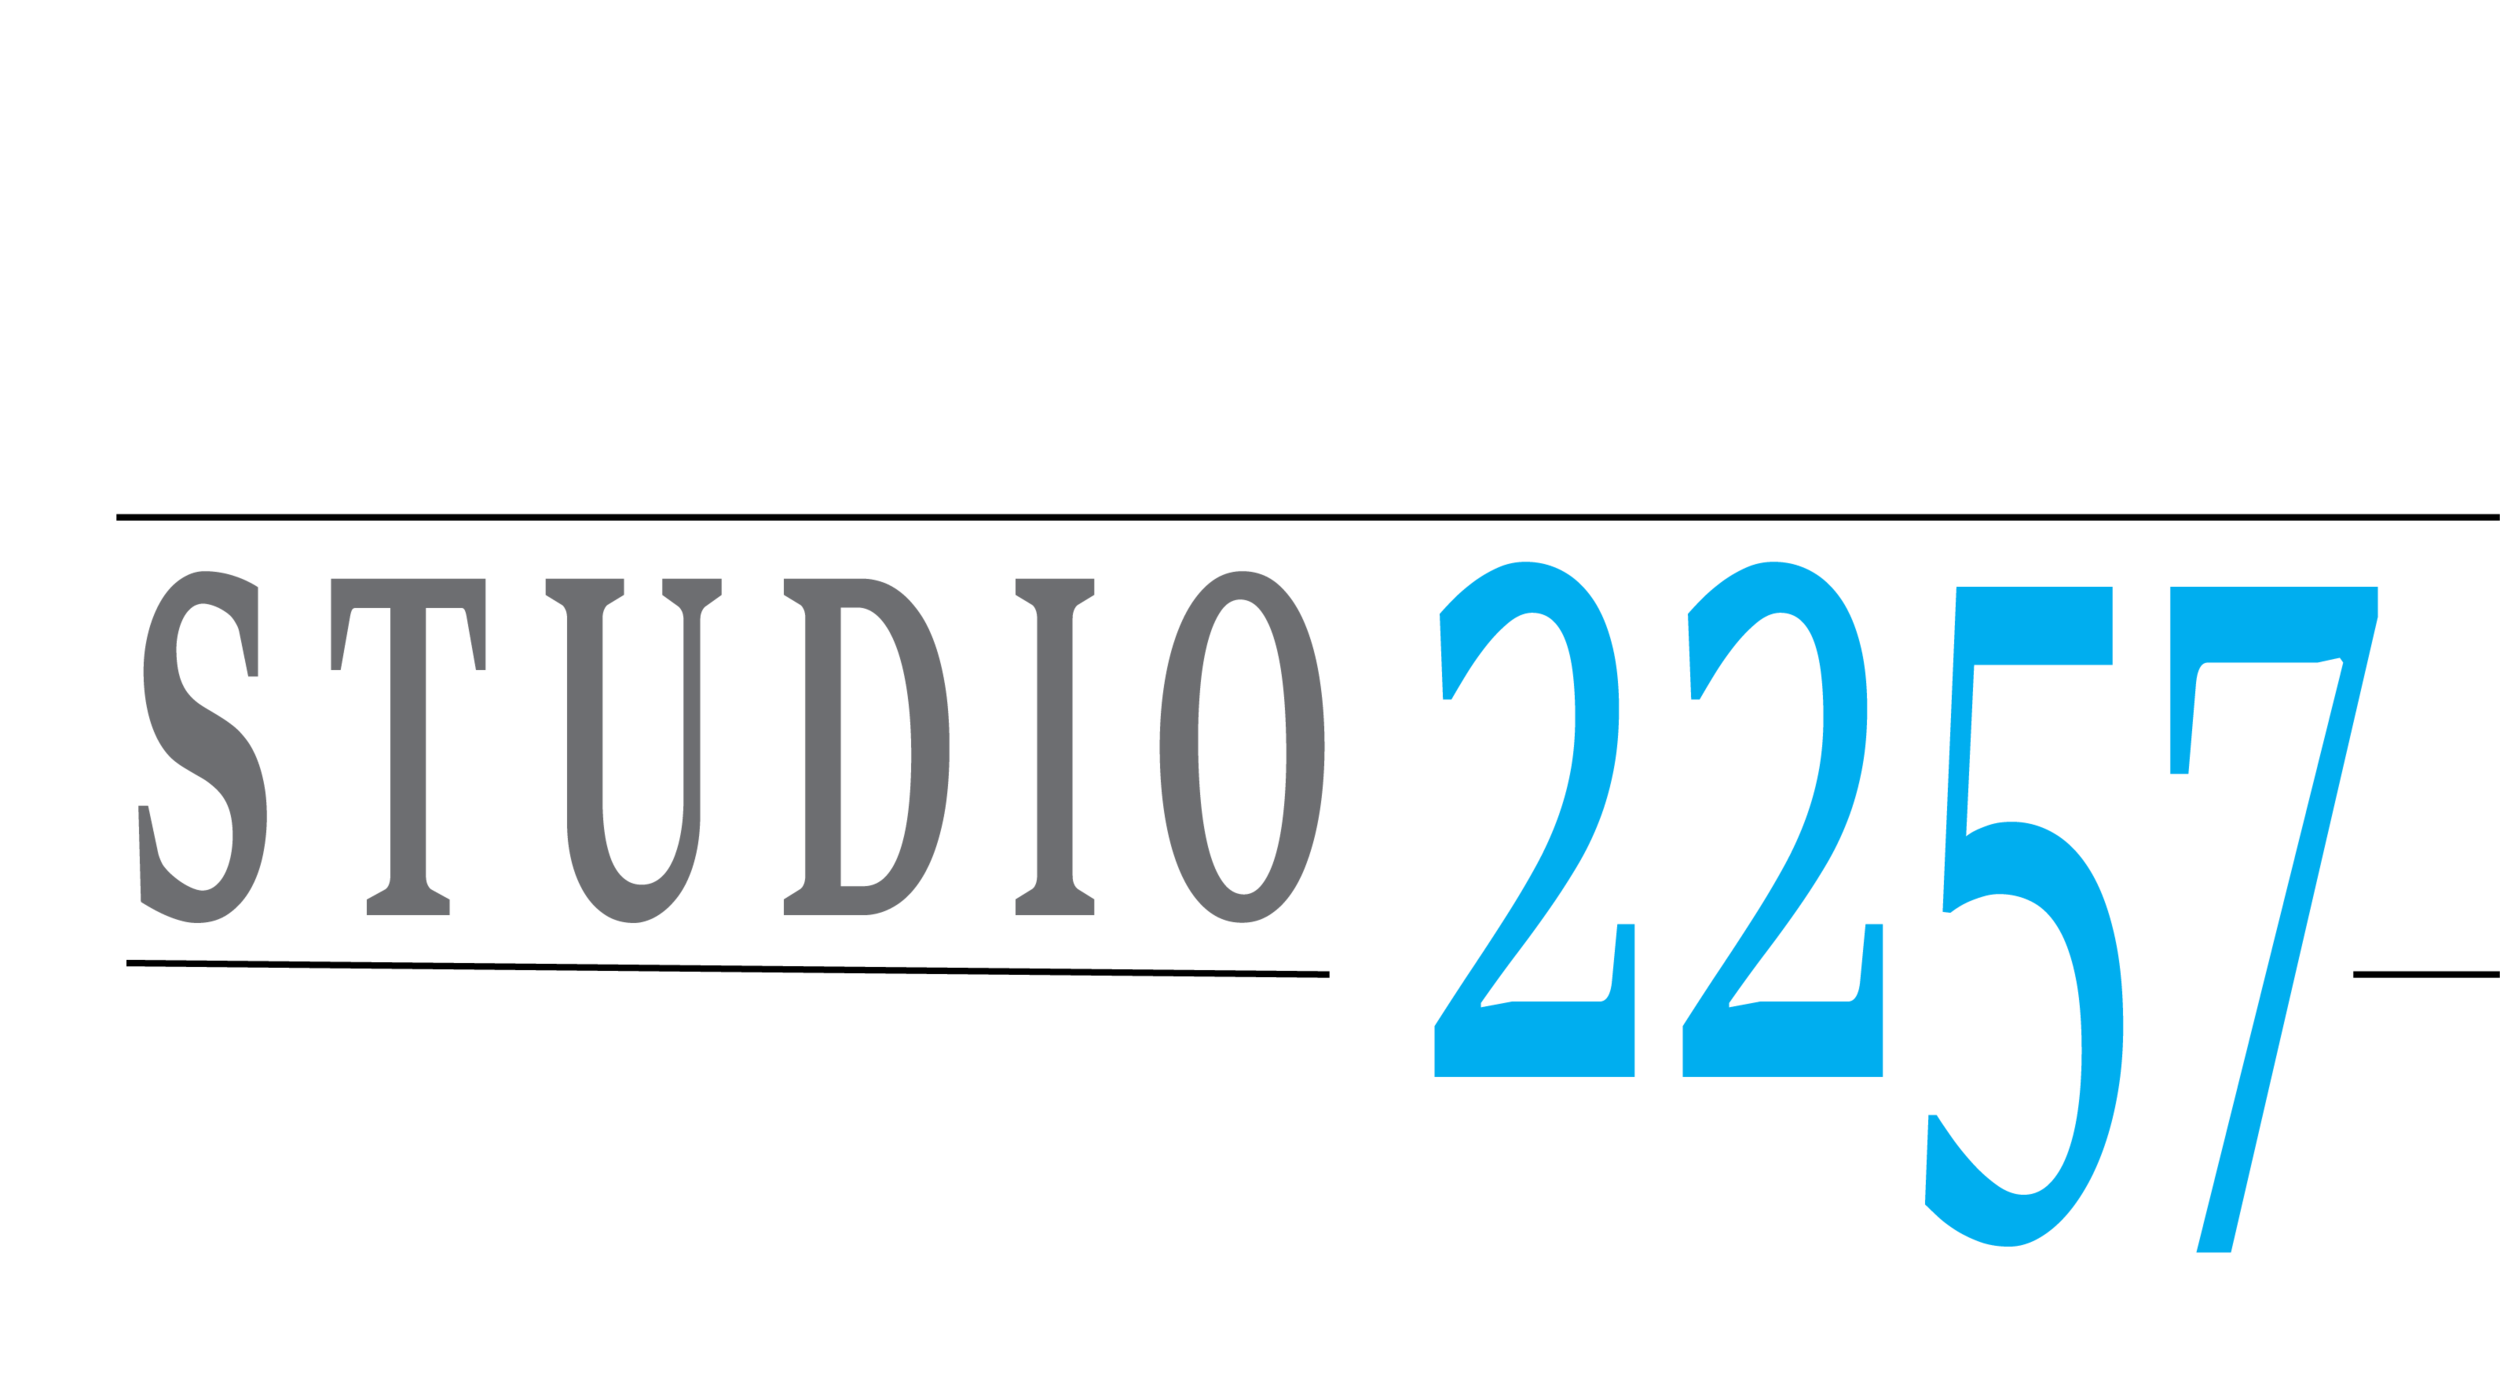 Studio2257